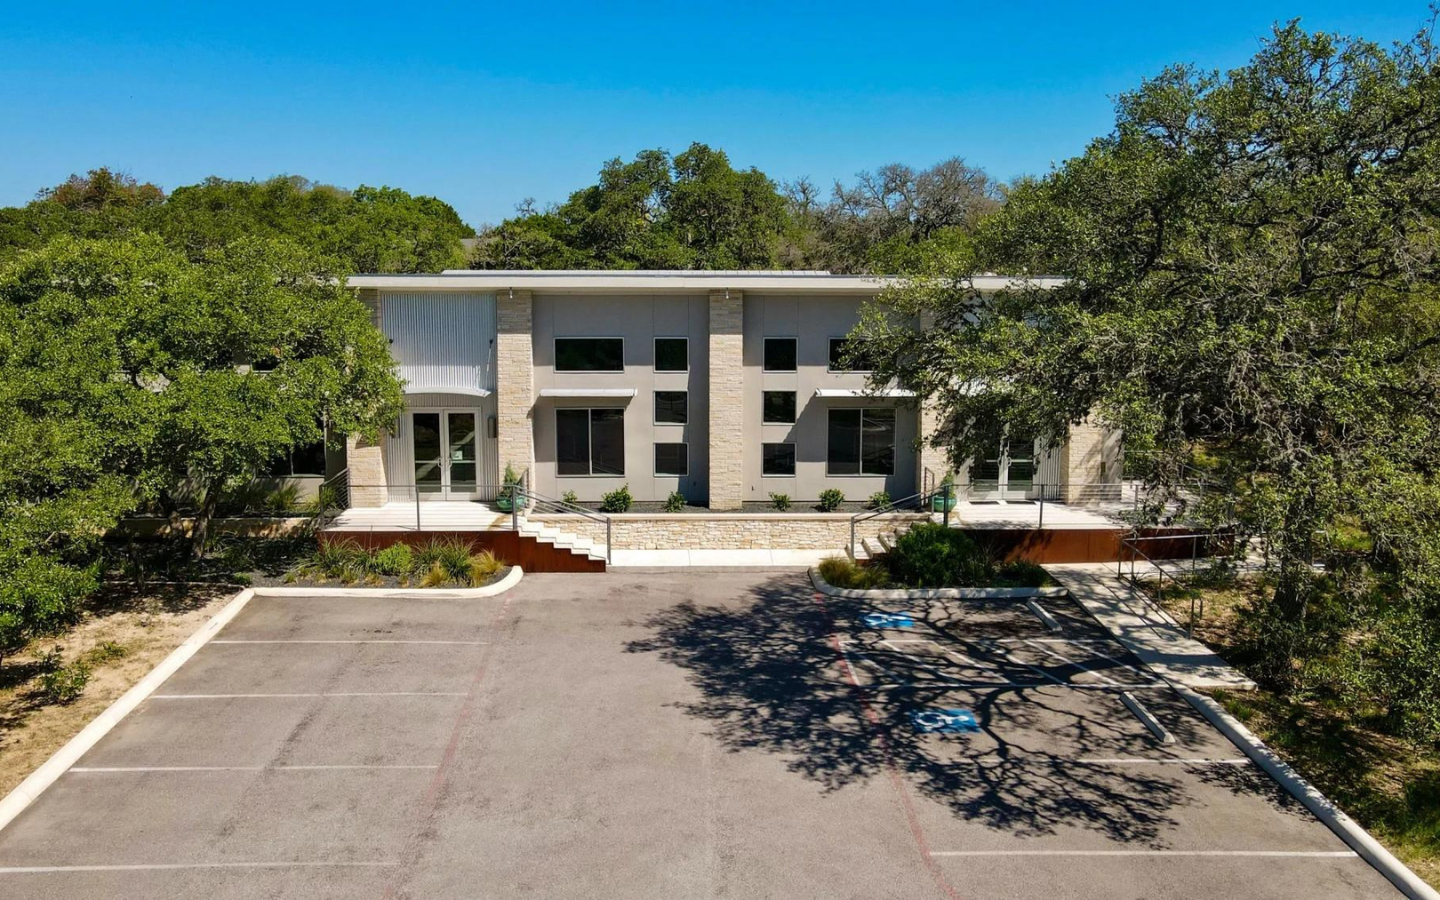 Maison unique de style ranch moderne à vendre, Hill Country, Texas